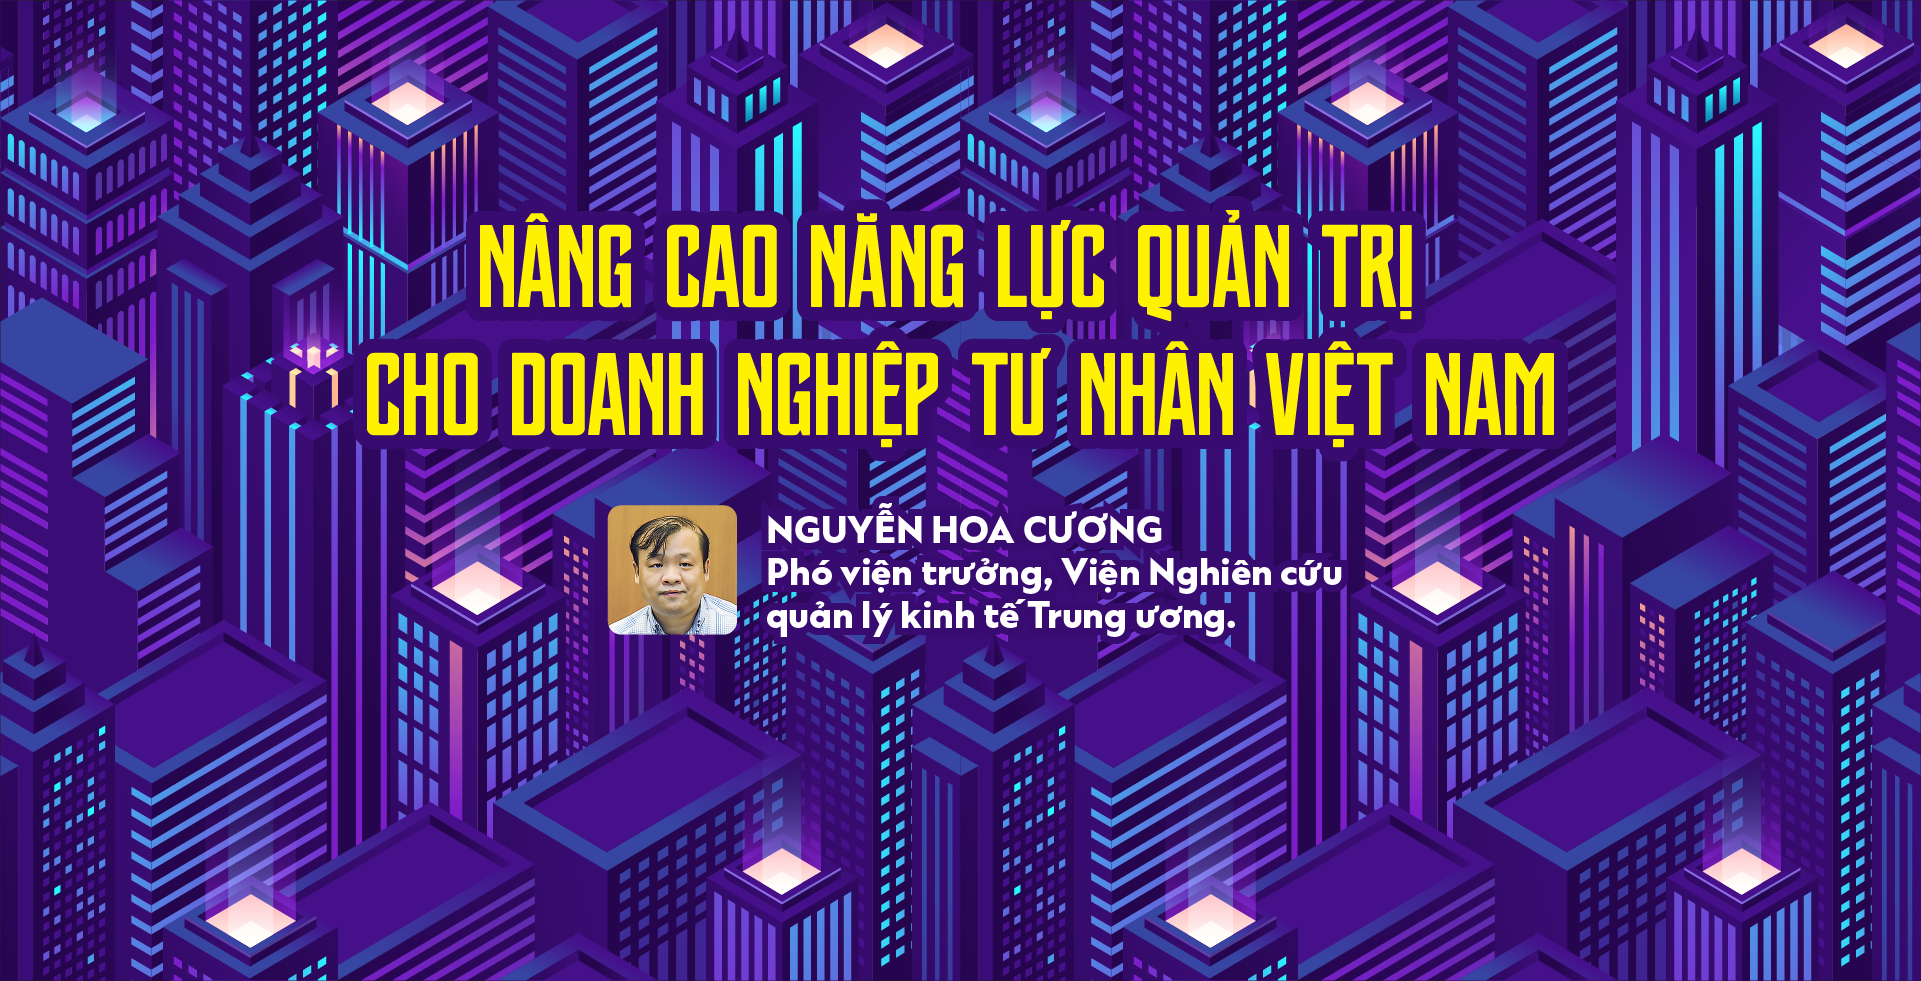 Nâng cao năng lực quản trị cho doanh nghiệp tư nhân Việt Nam - Ảnh 1